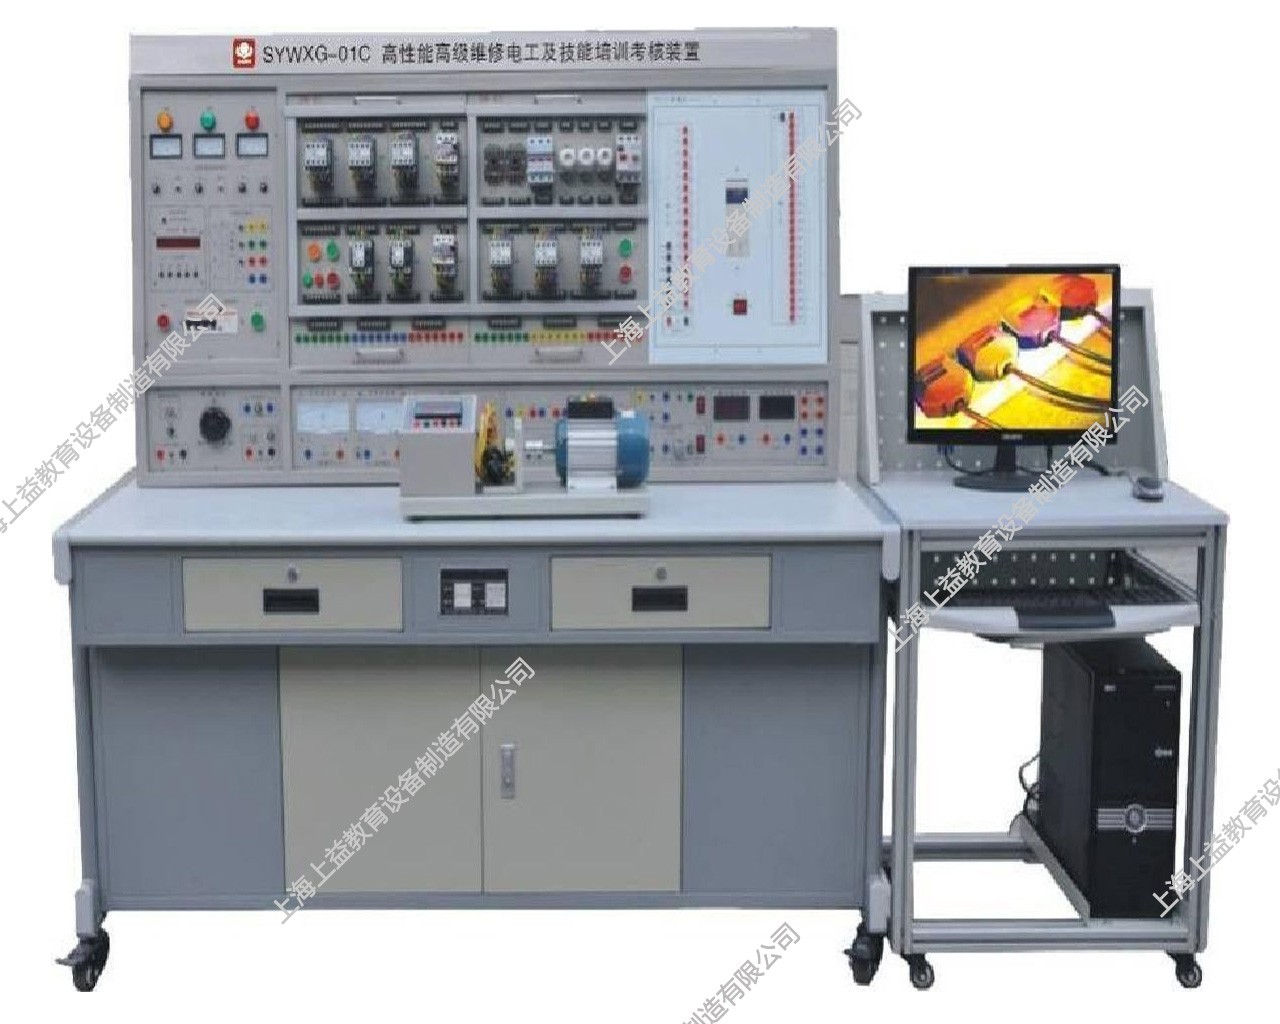 SYWXG-01C高性能高级维修电工及技能培训考核装置